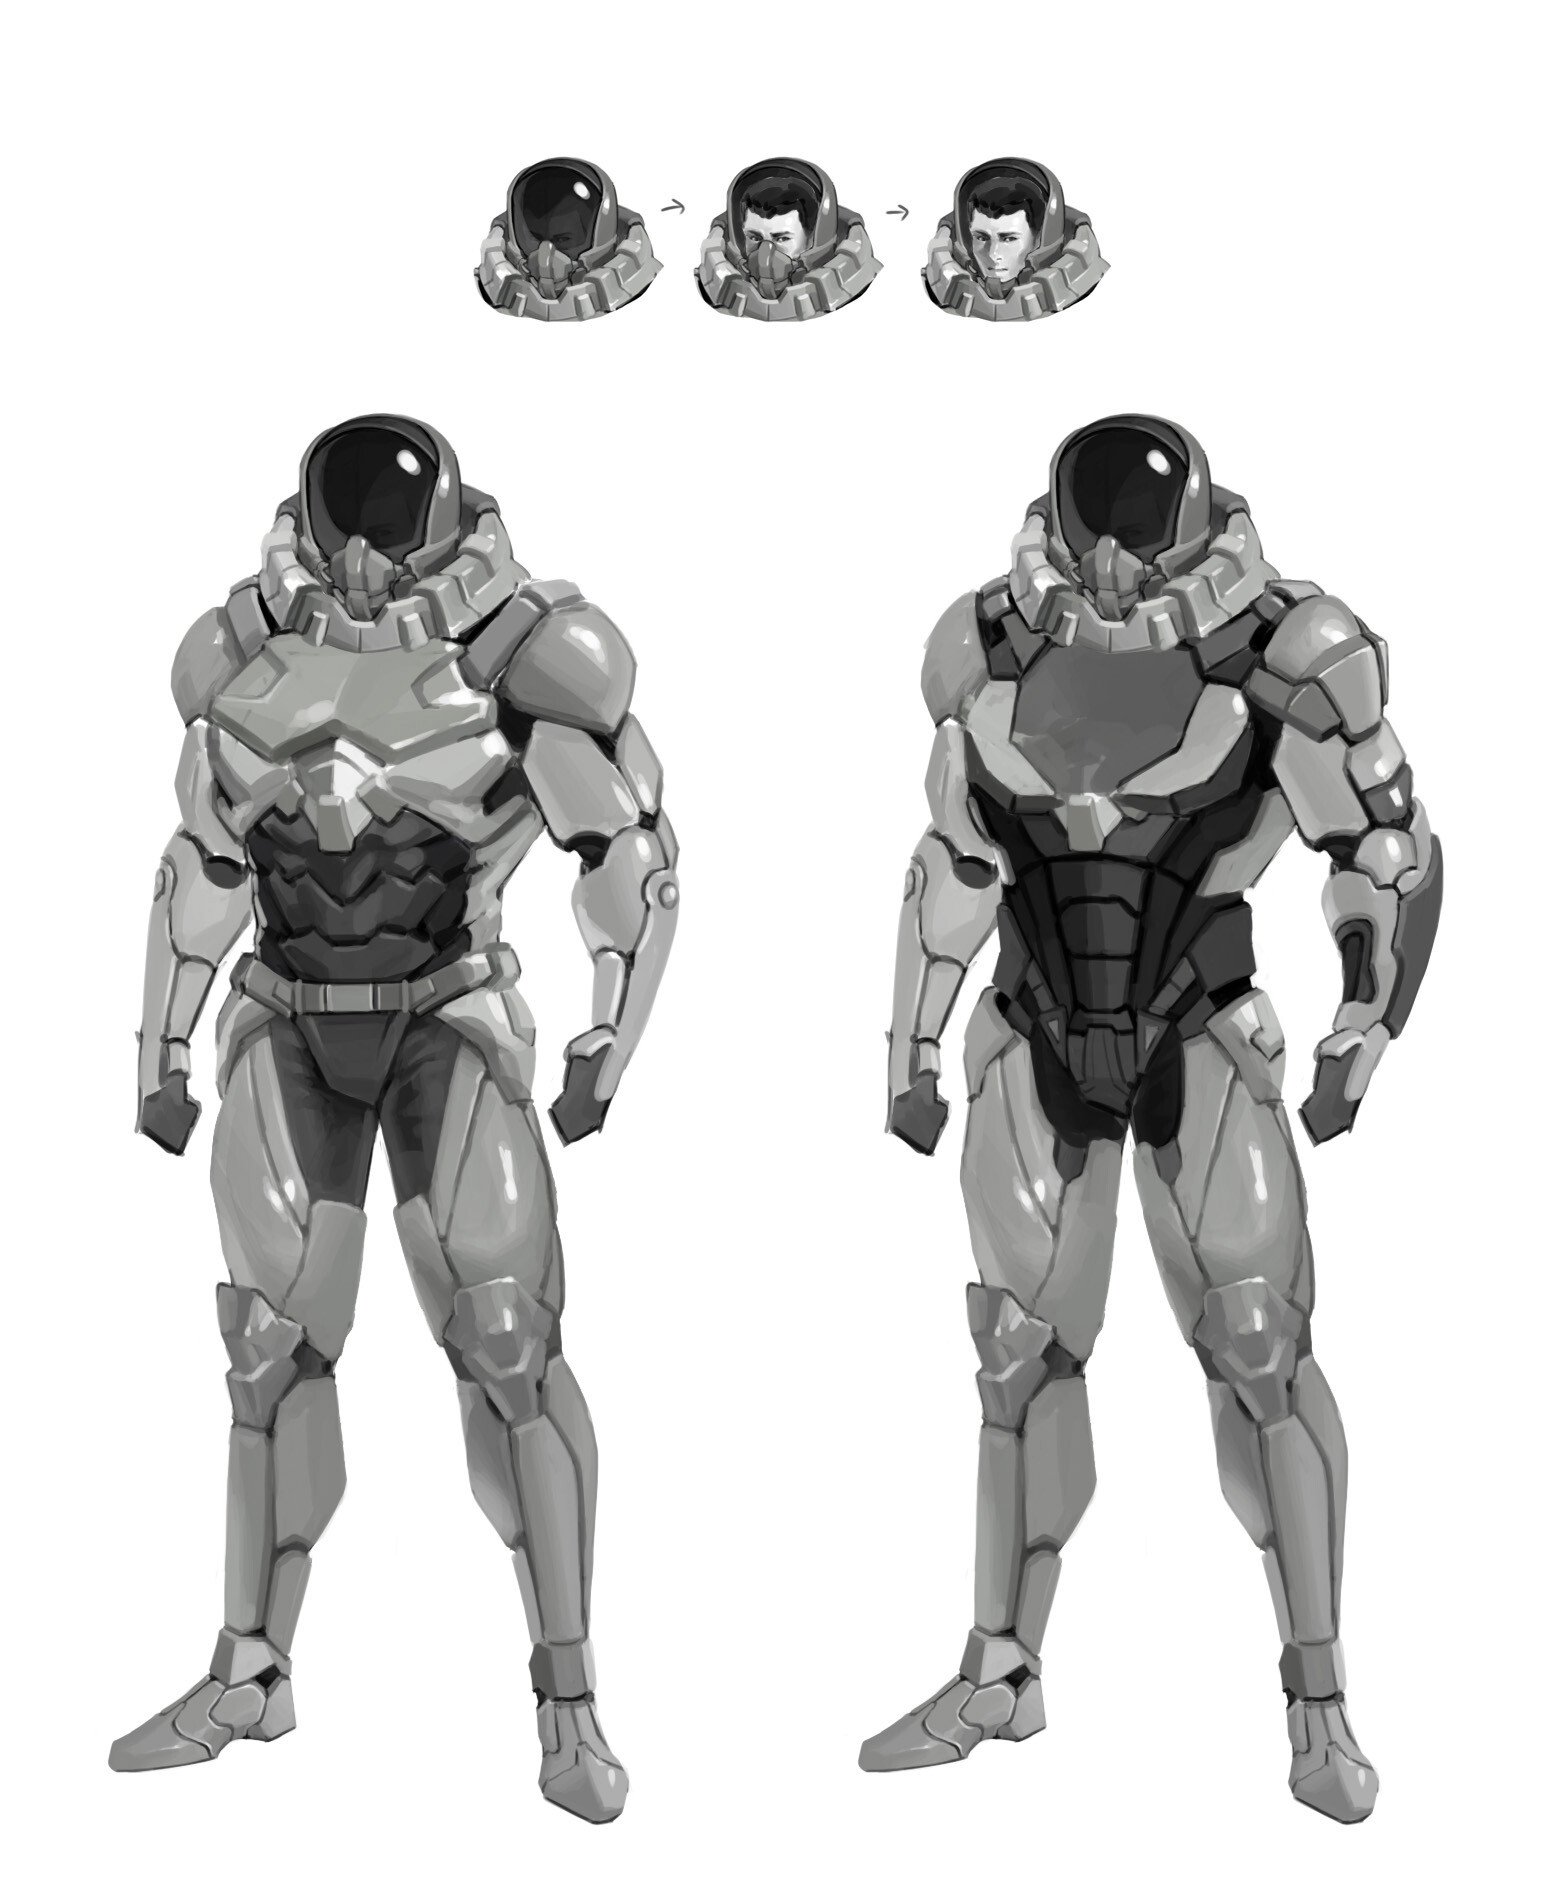 ArtStation - Space suit_Concept sketch